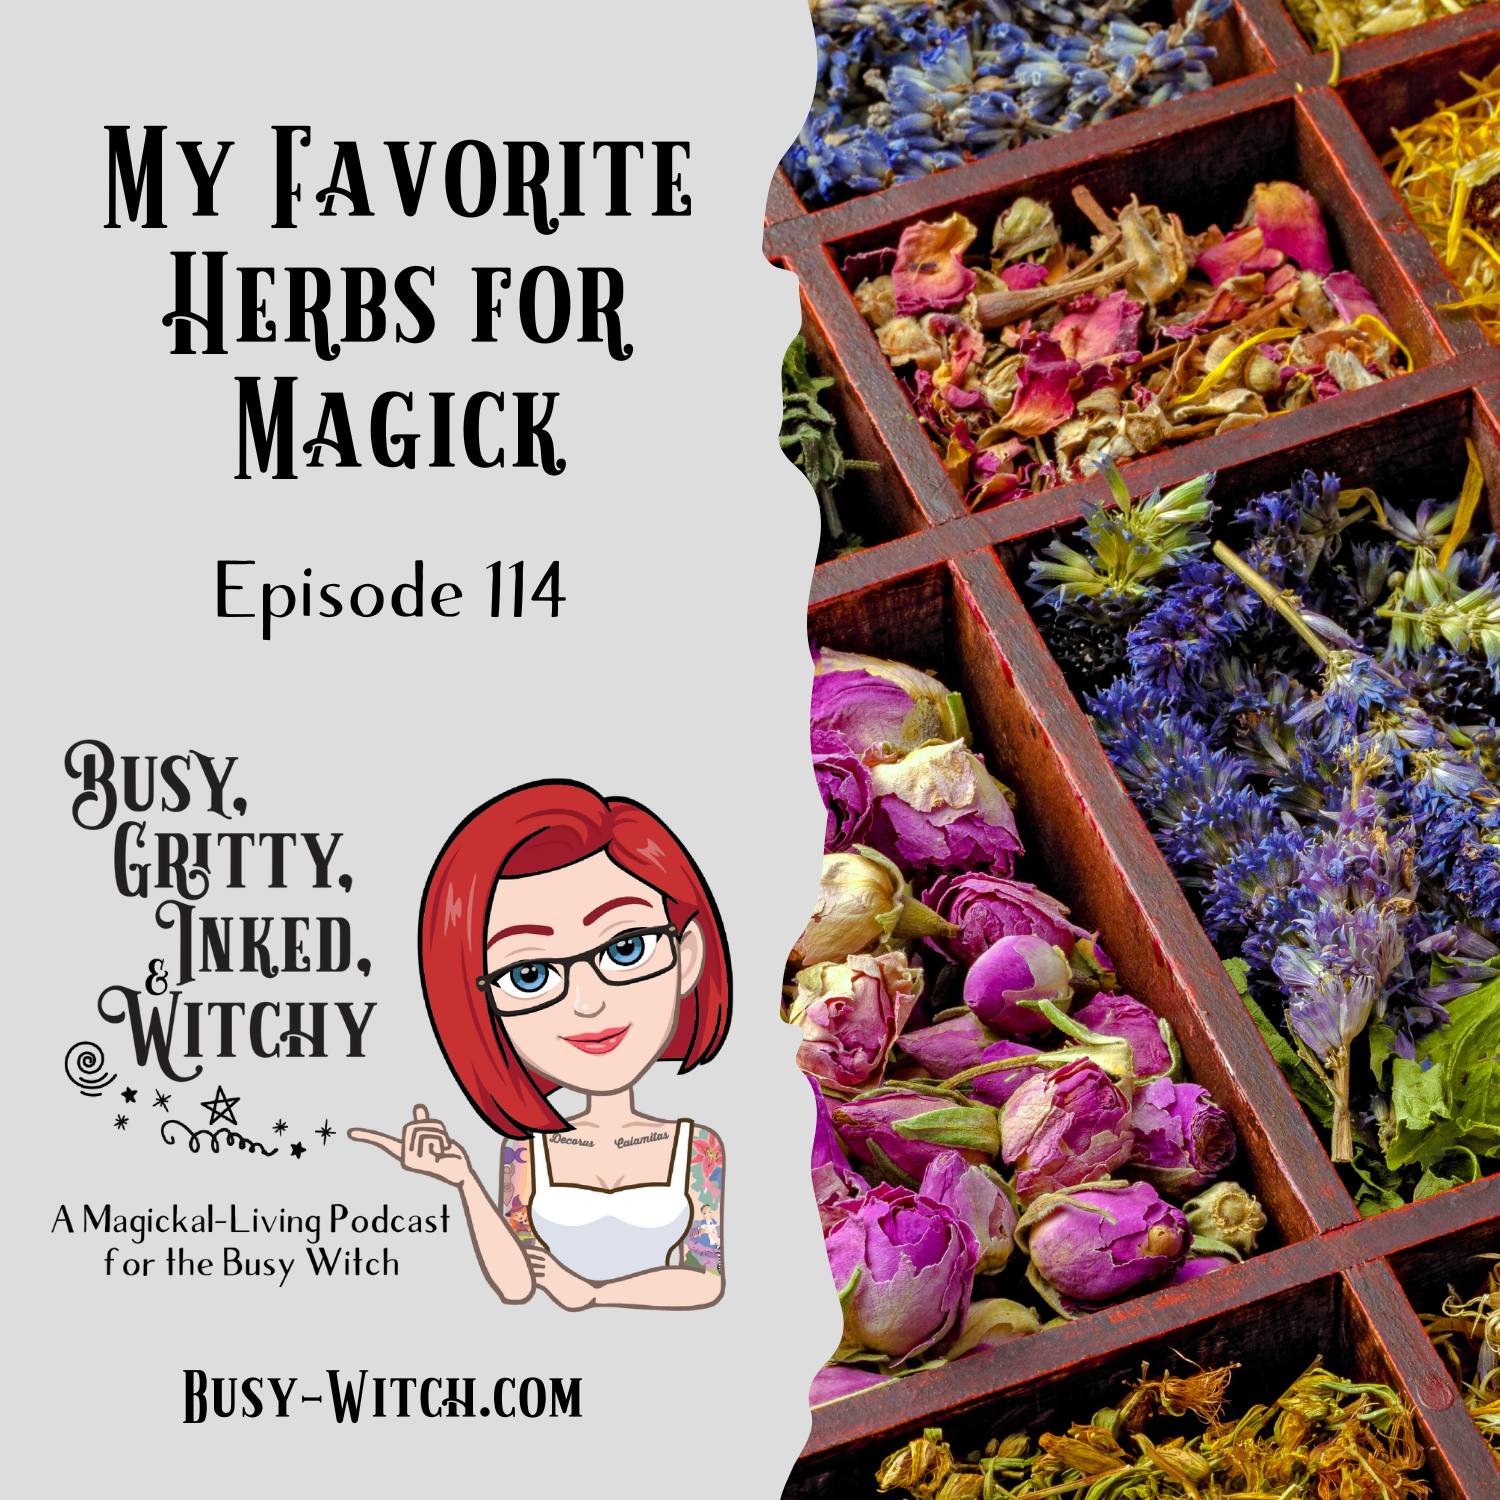 Morgan's Favorite Herbs for Magick